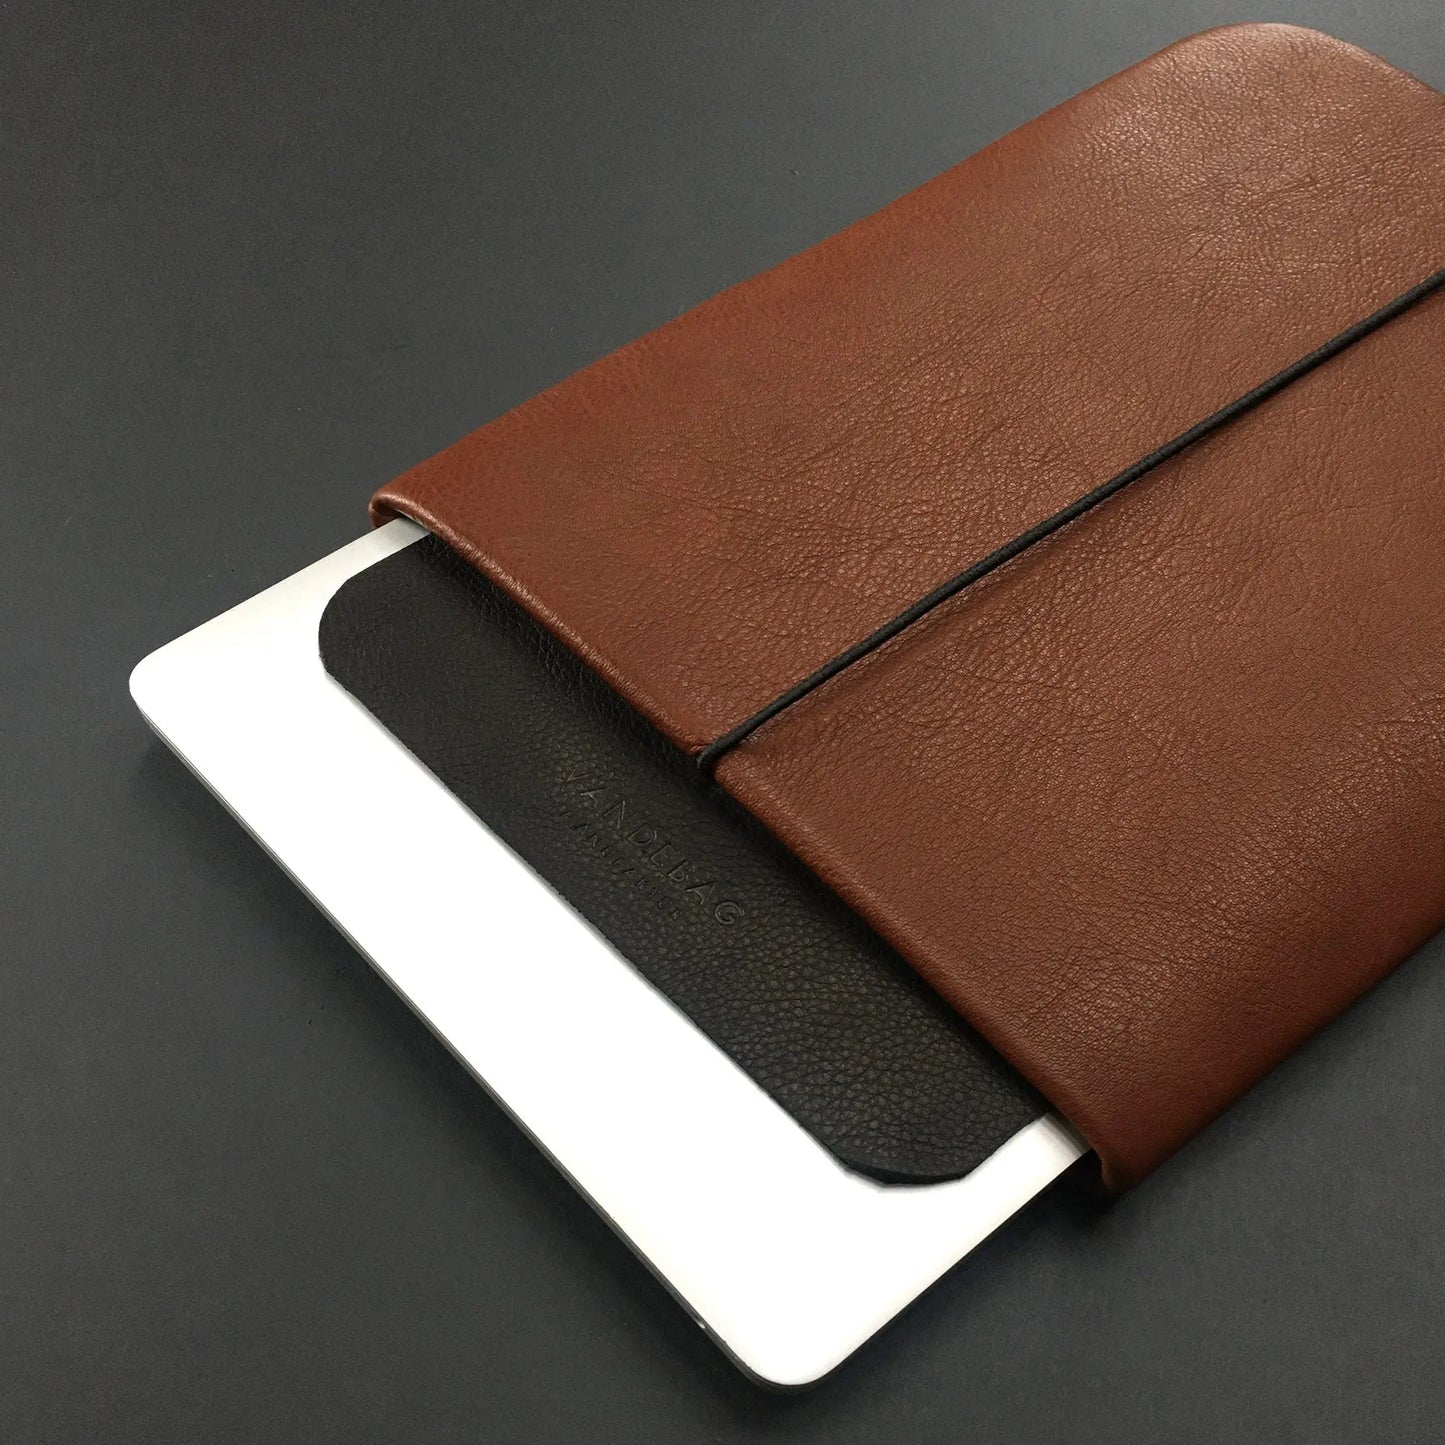 Notebookhülle aus braunem Leder mit schwarzer Verschlussklappe und mit Macbook 